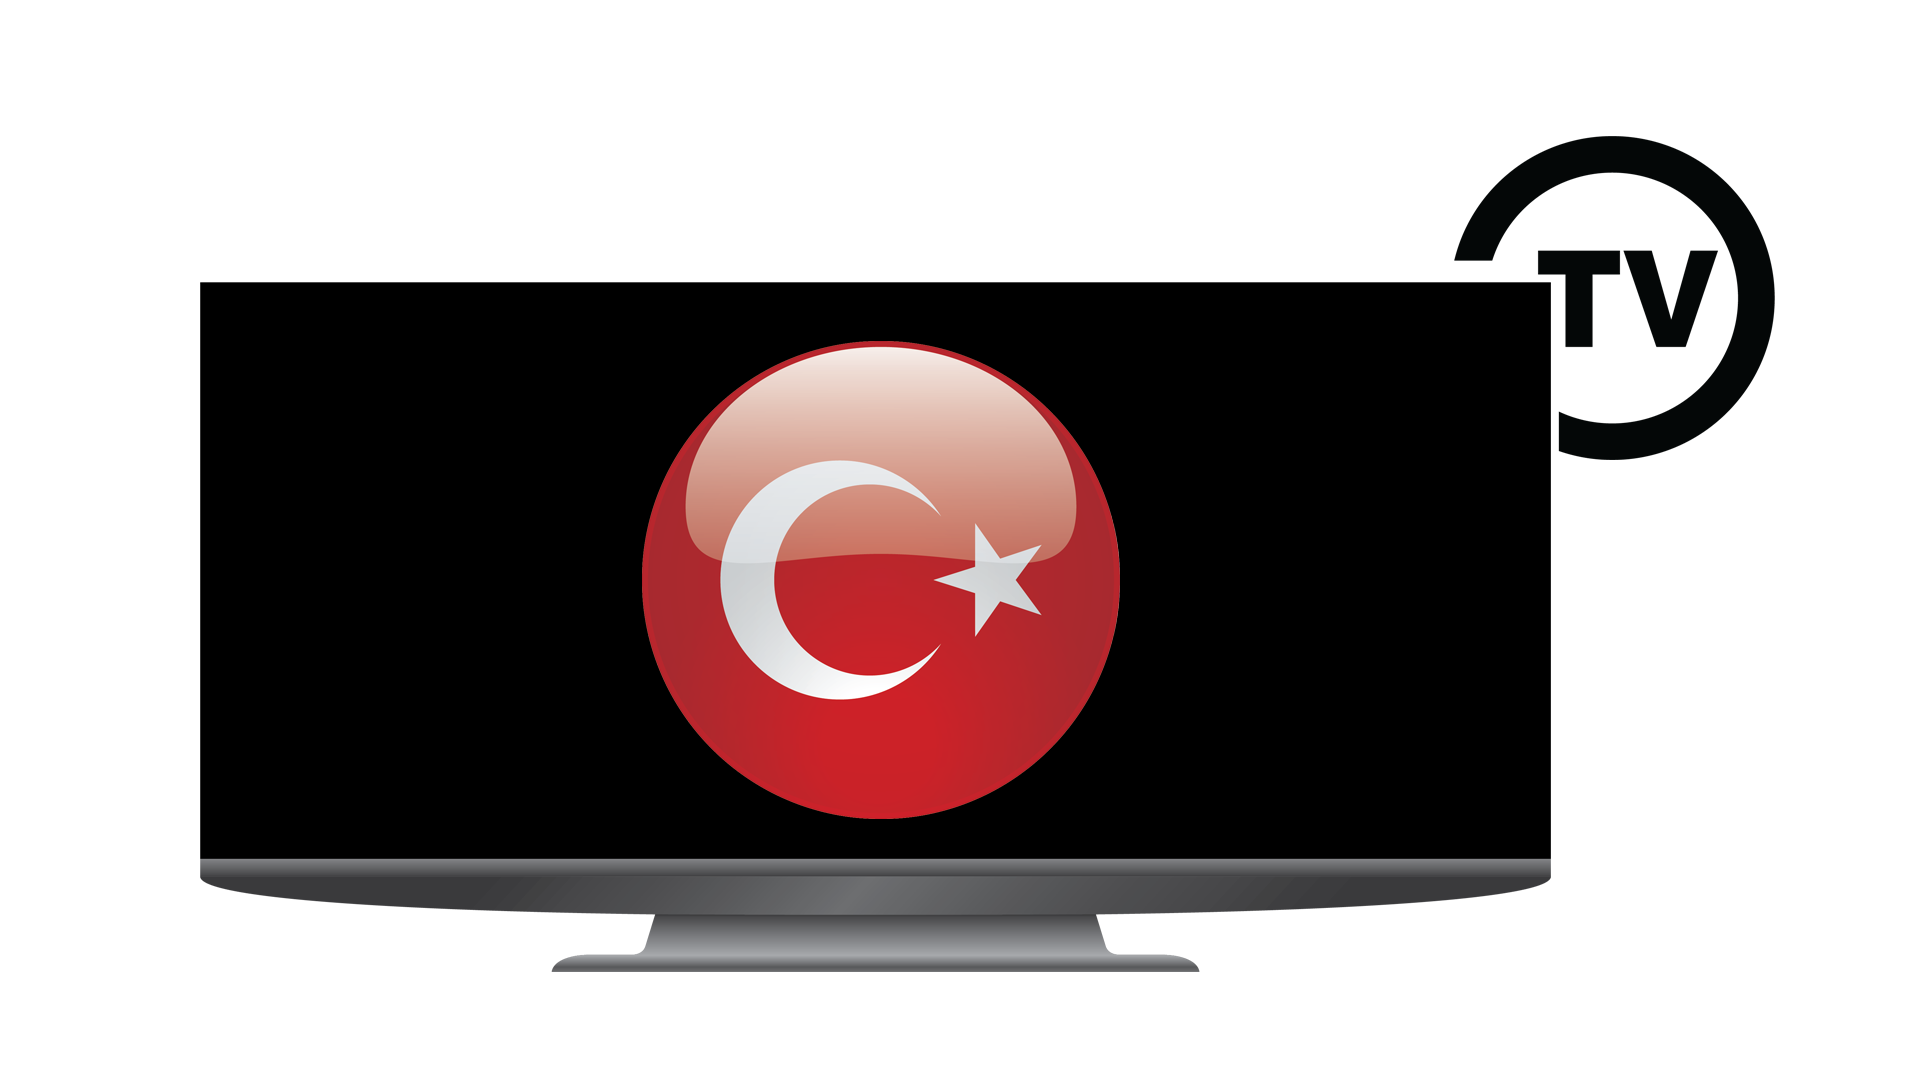 Tr turkish tv. Туркиш ТВ. Turkish TV. Turk TV. Media Turk TV.